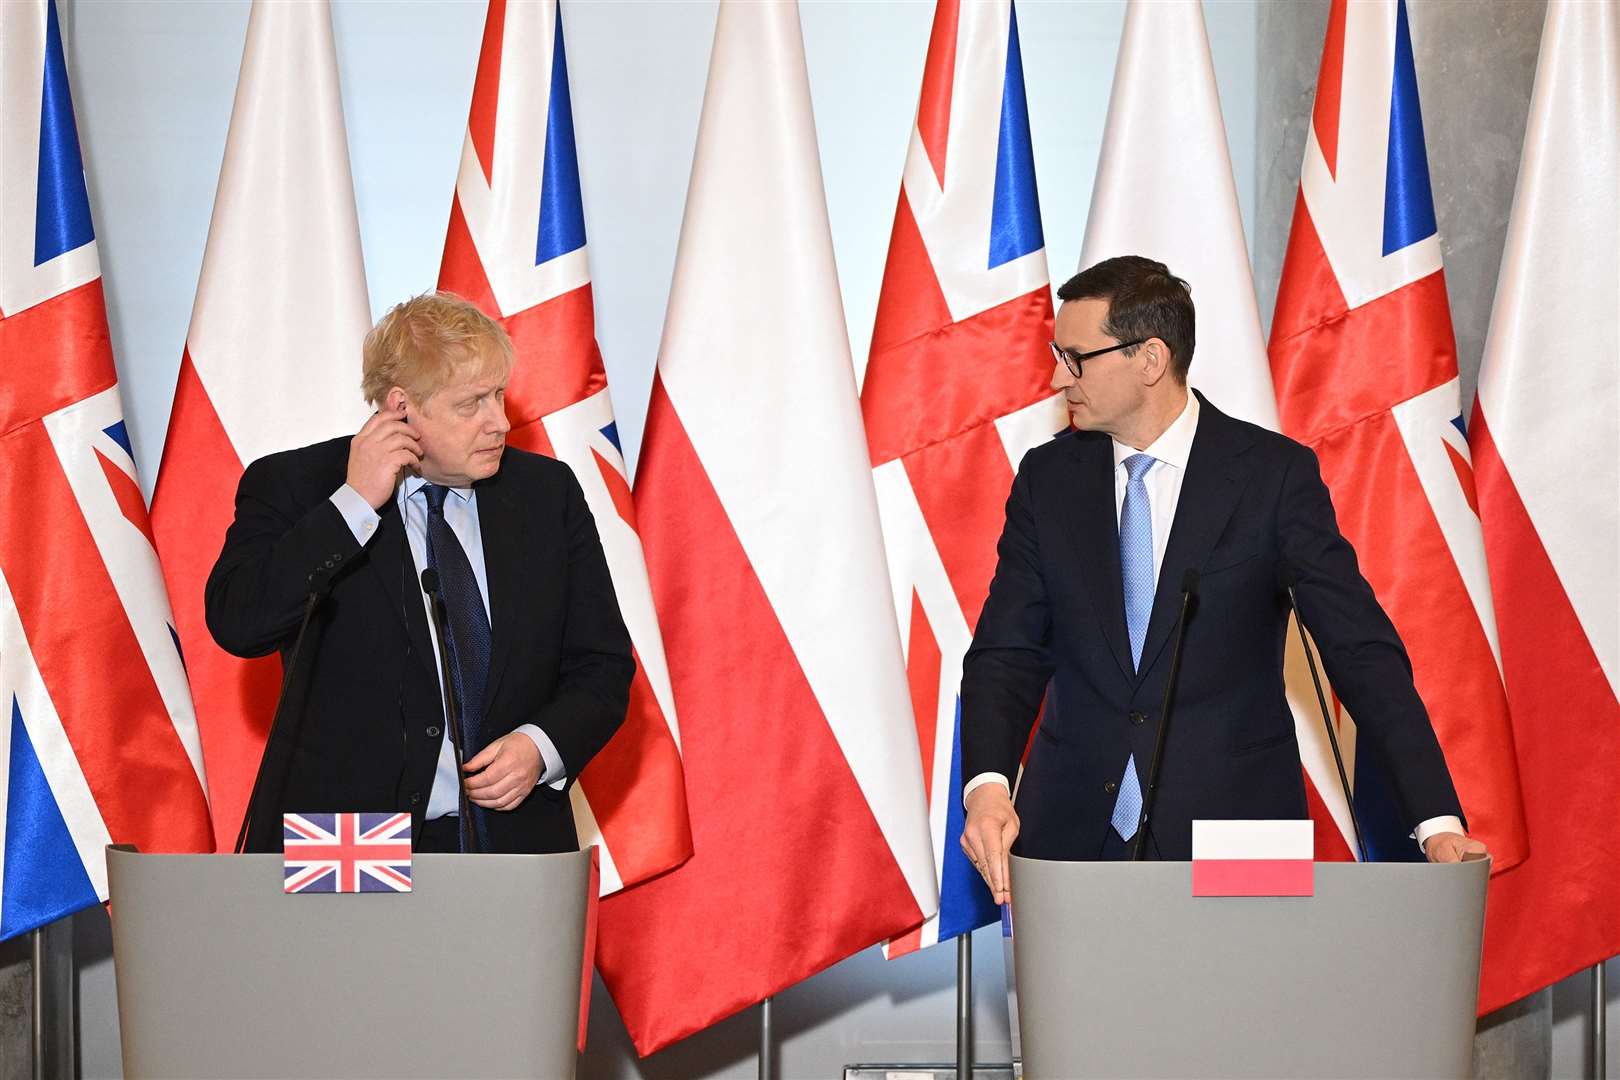 Prime Minister Boris Johnson with Polish Prime Minister Mateusz Morawiecki (Leon Neal/PA)